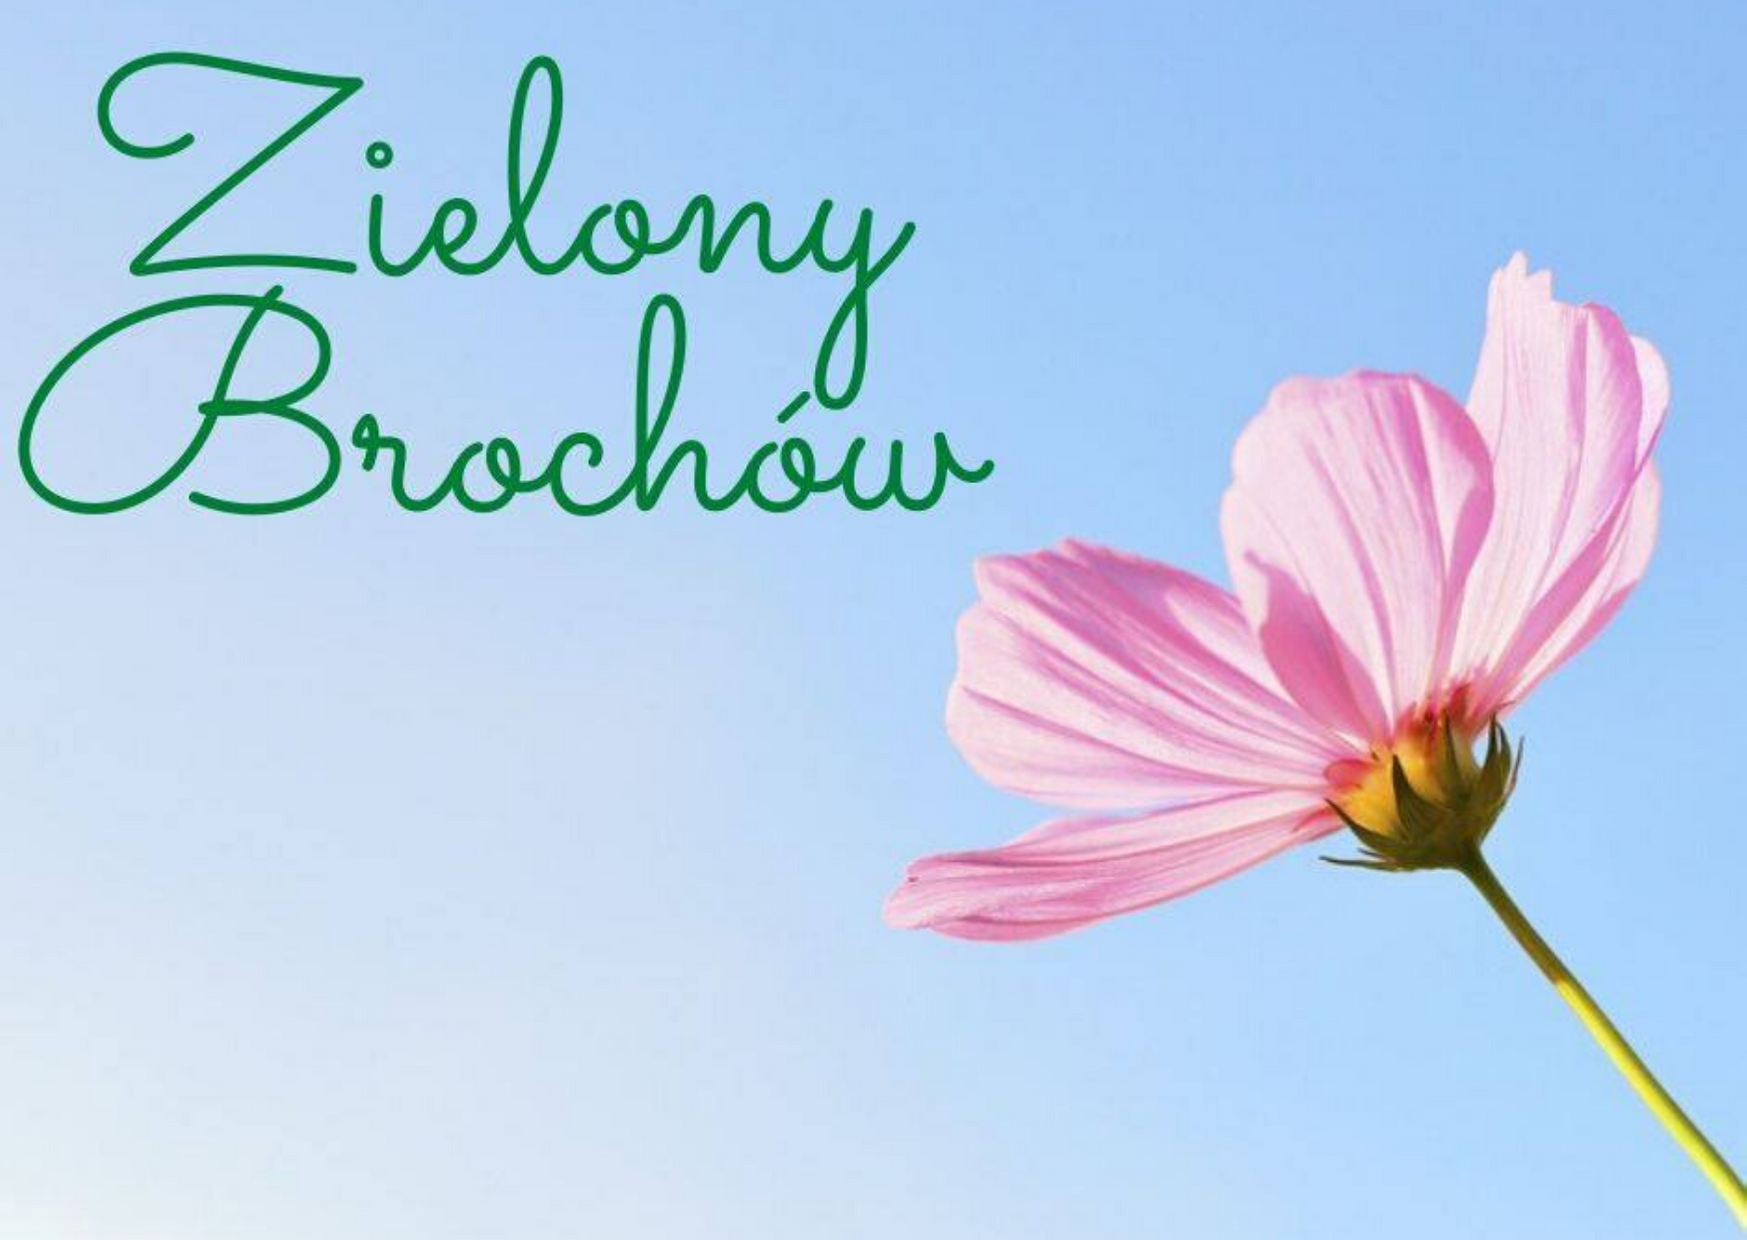 Na niebieskim tle widać kwiatek i zielony napis Zielony Brochów